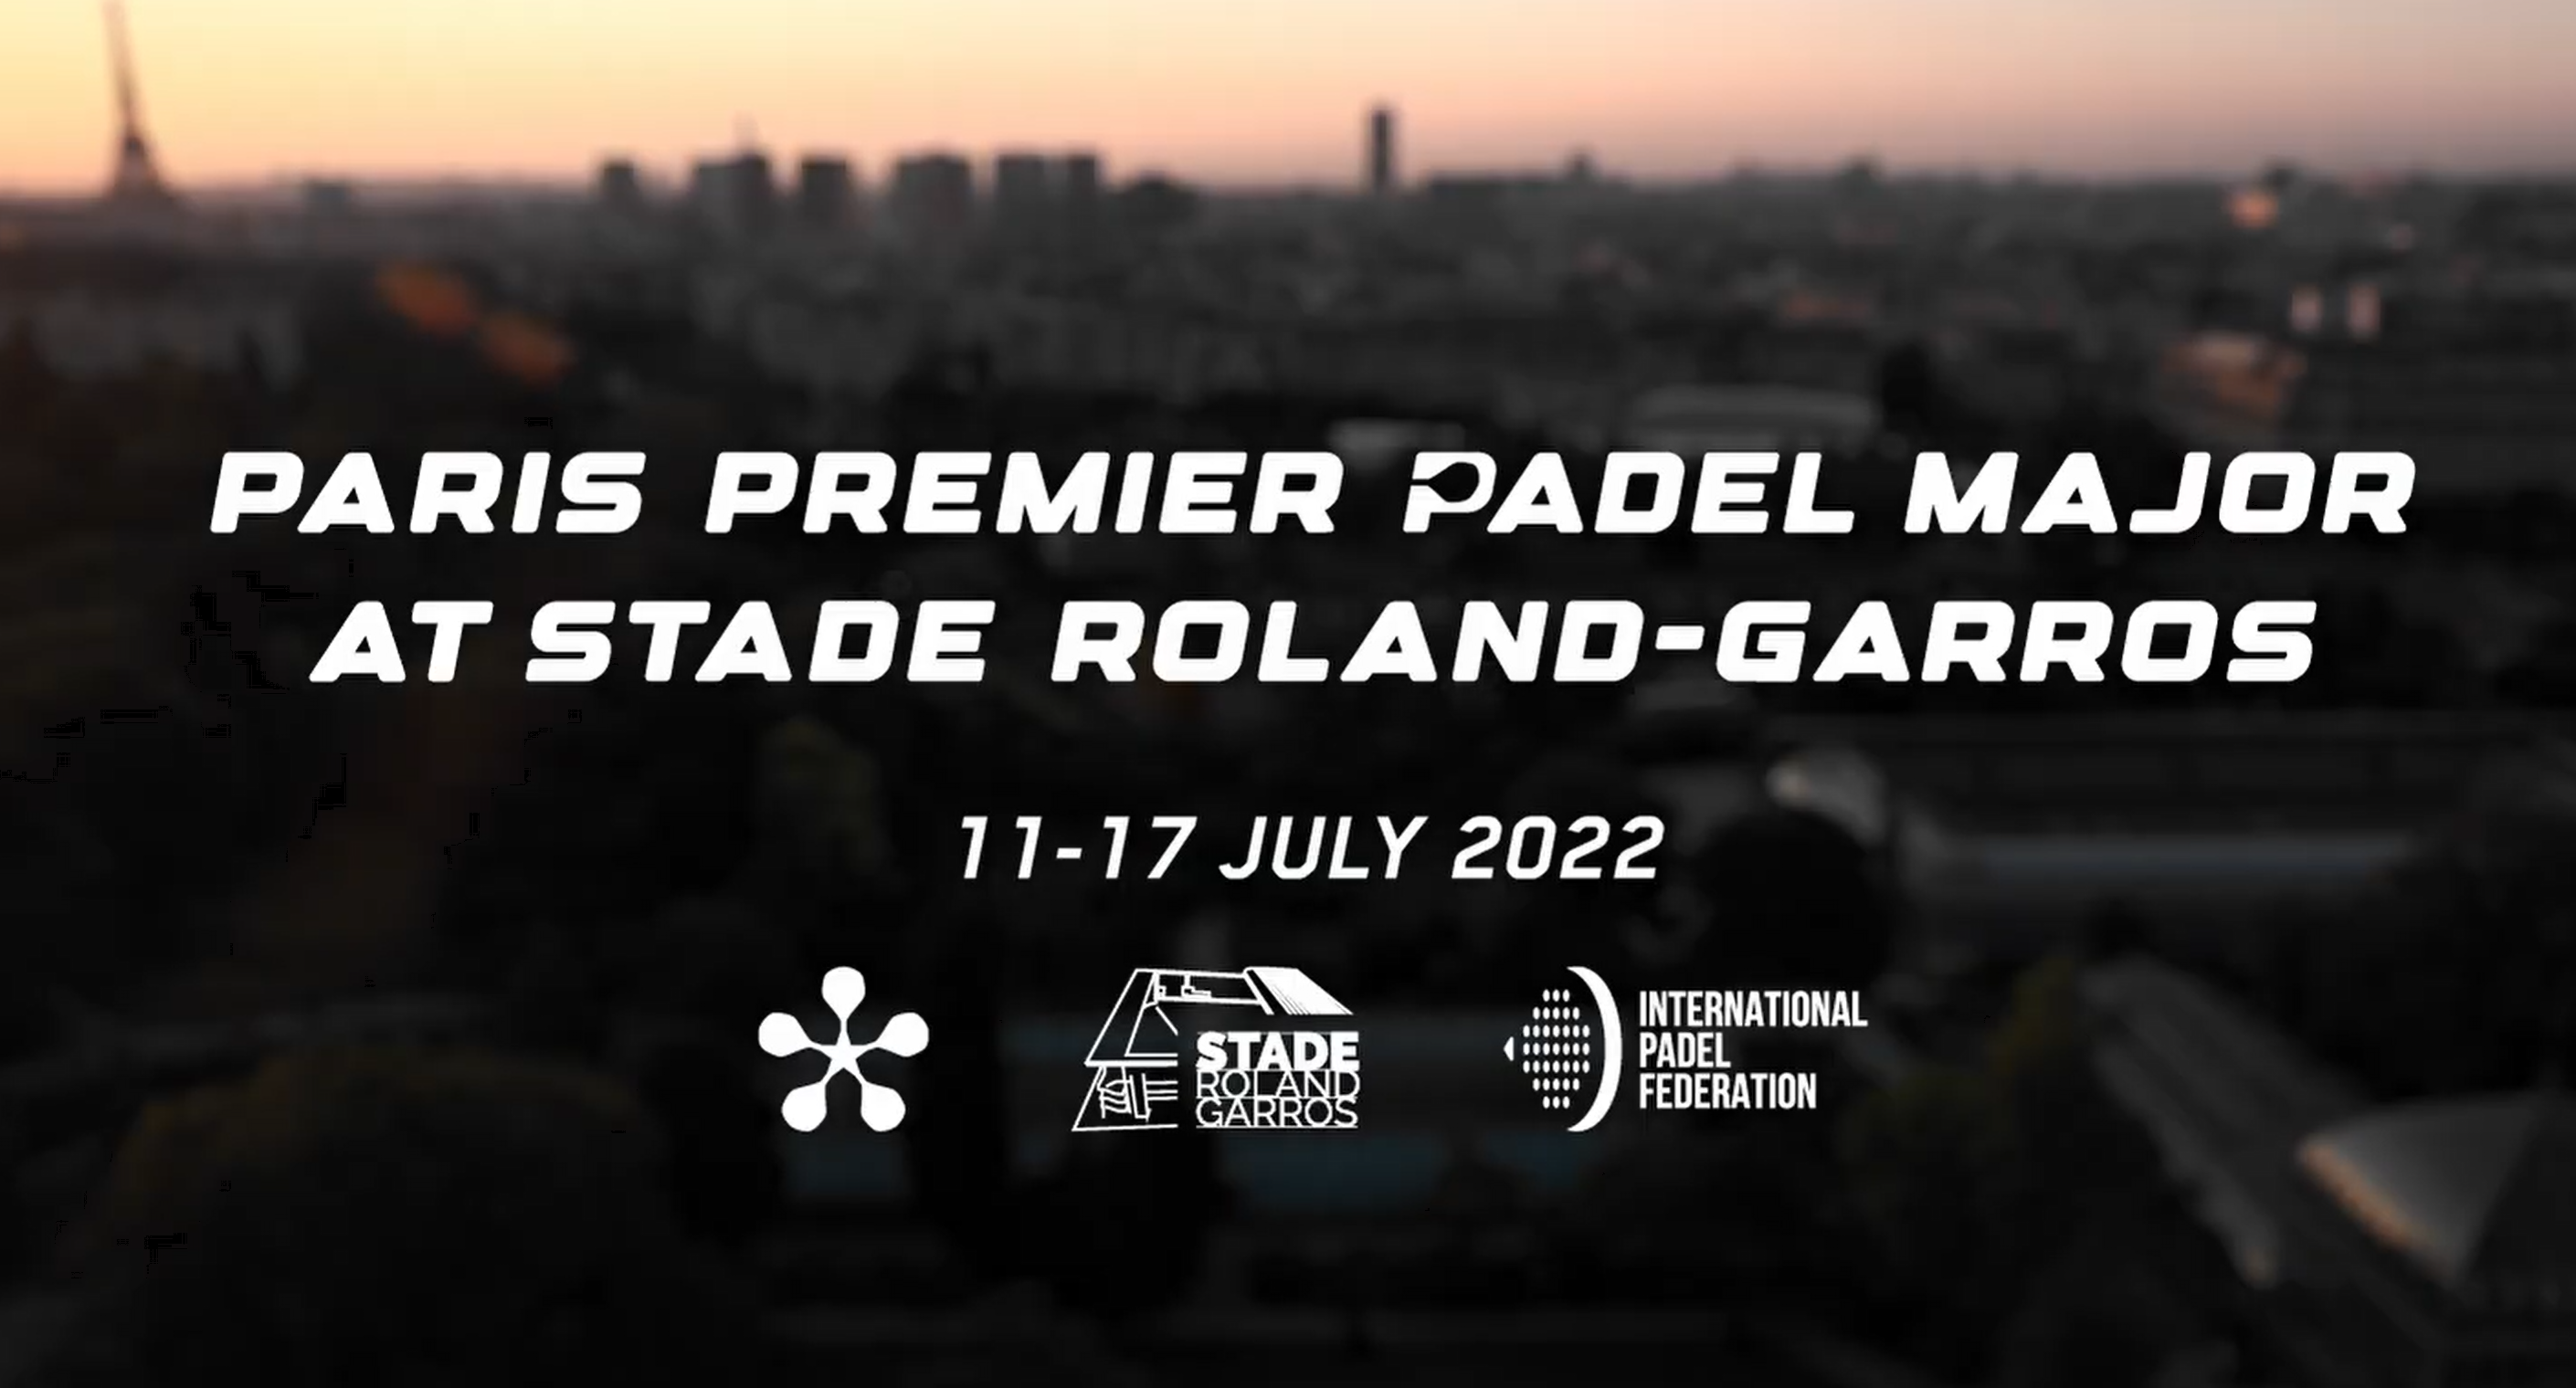 WYJĄTKOWY: Paris Premier Padel Major na stadionie Roland-Garros od 11 do 17 lipca 2022 r.